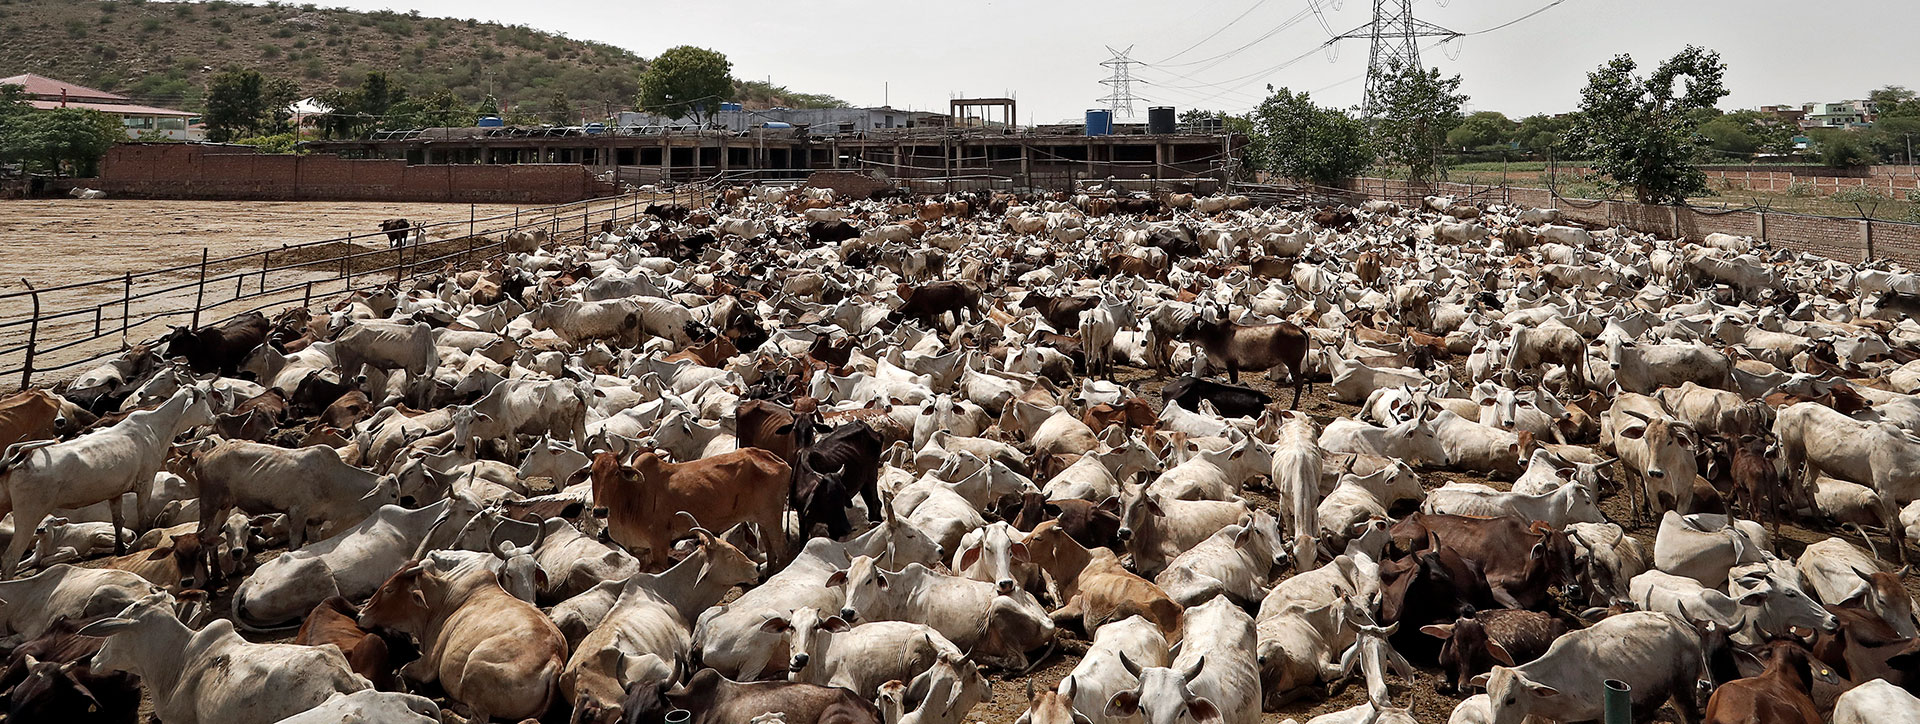 मध्य प्रदेश: कथित तौर पर भाजपा नेता द्वारा संचालित गोशाला में गायें मृत पाई गईं, केस दर्ज